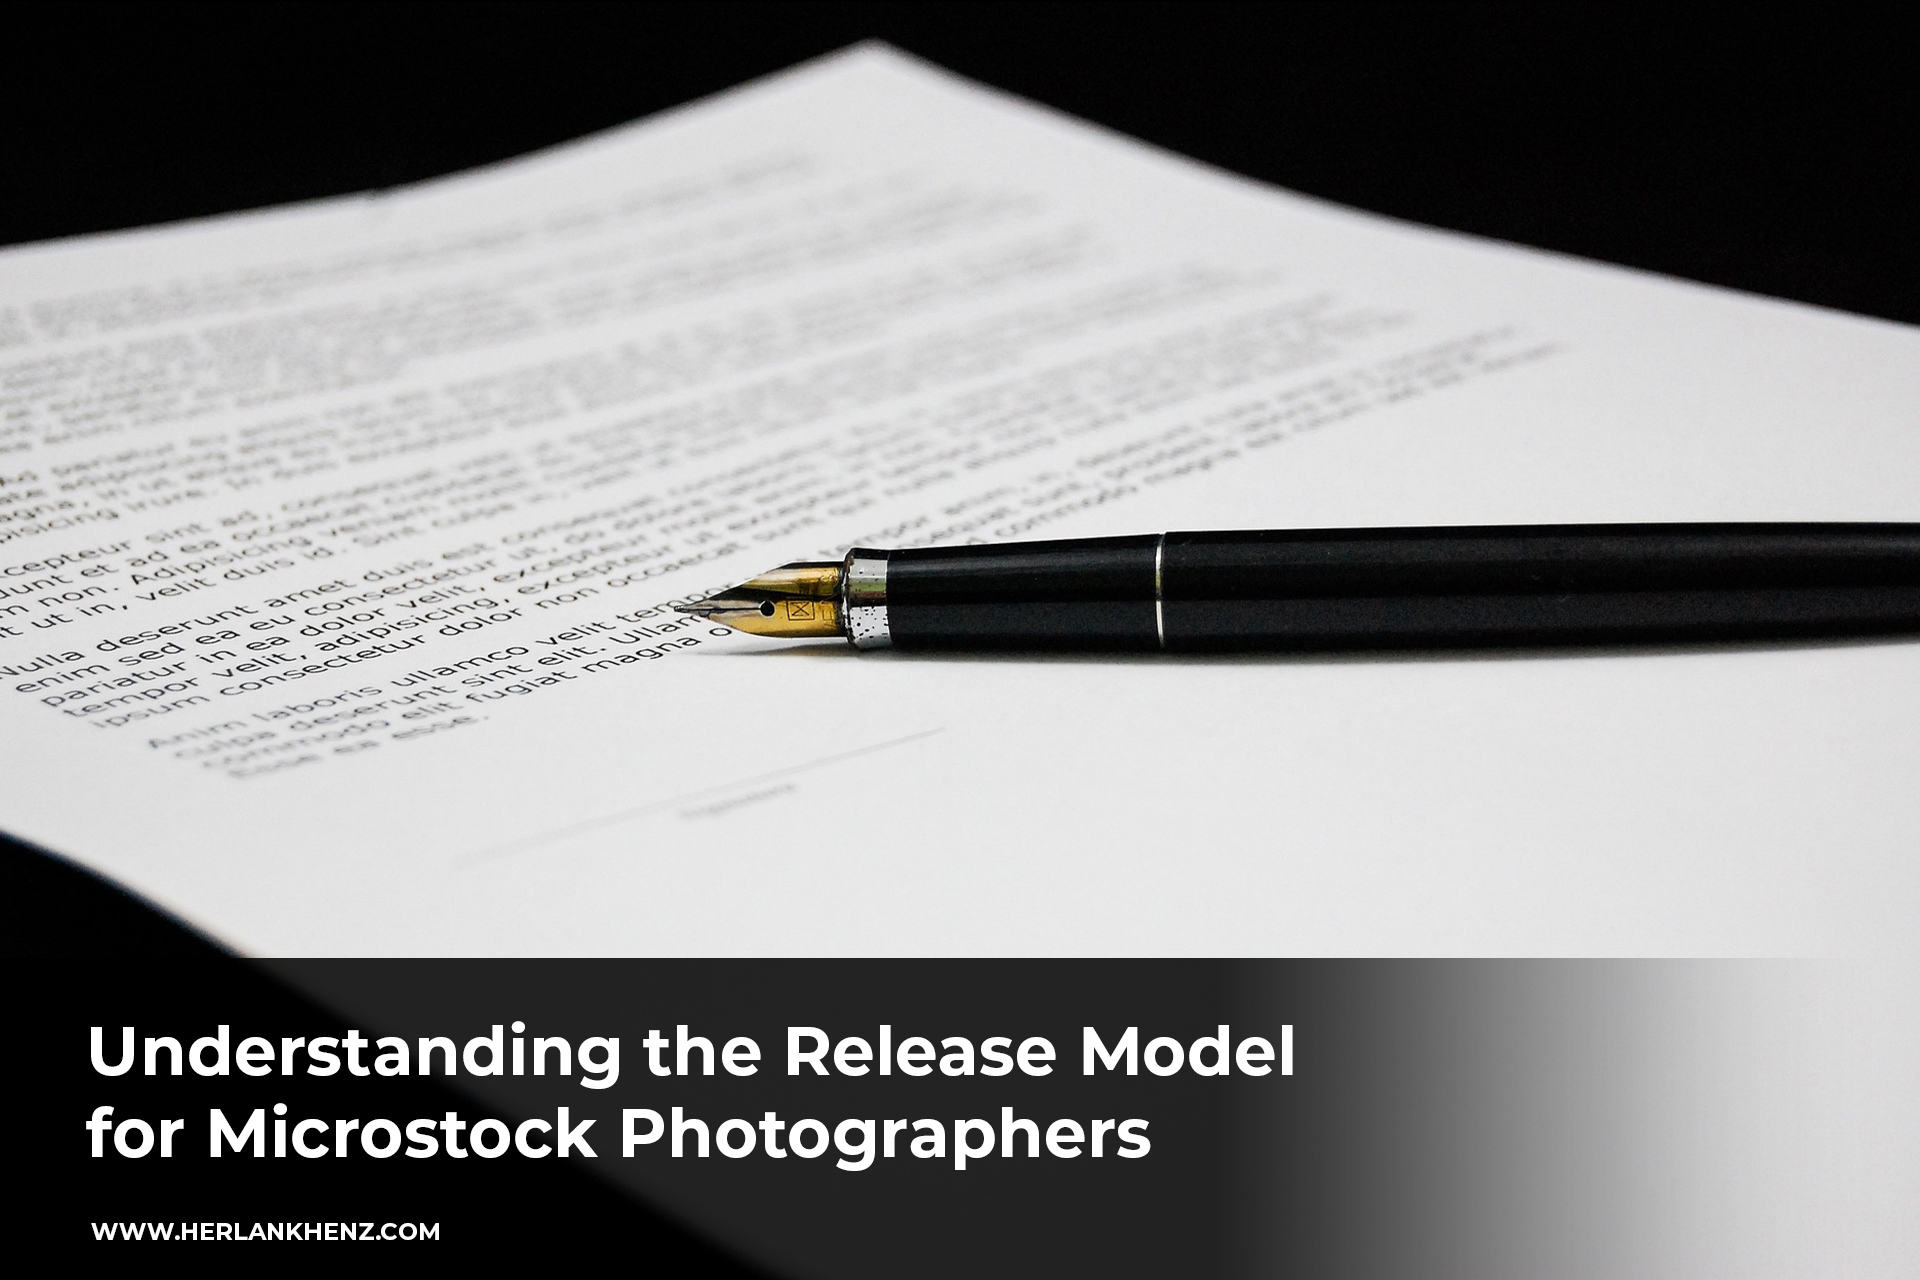 Das Veröffentlichungsmodell für Microstock-Fotografen verstehen